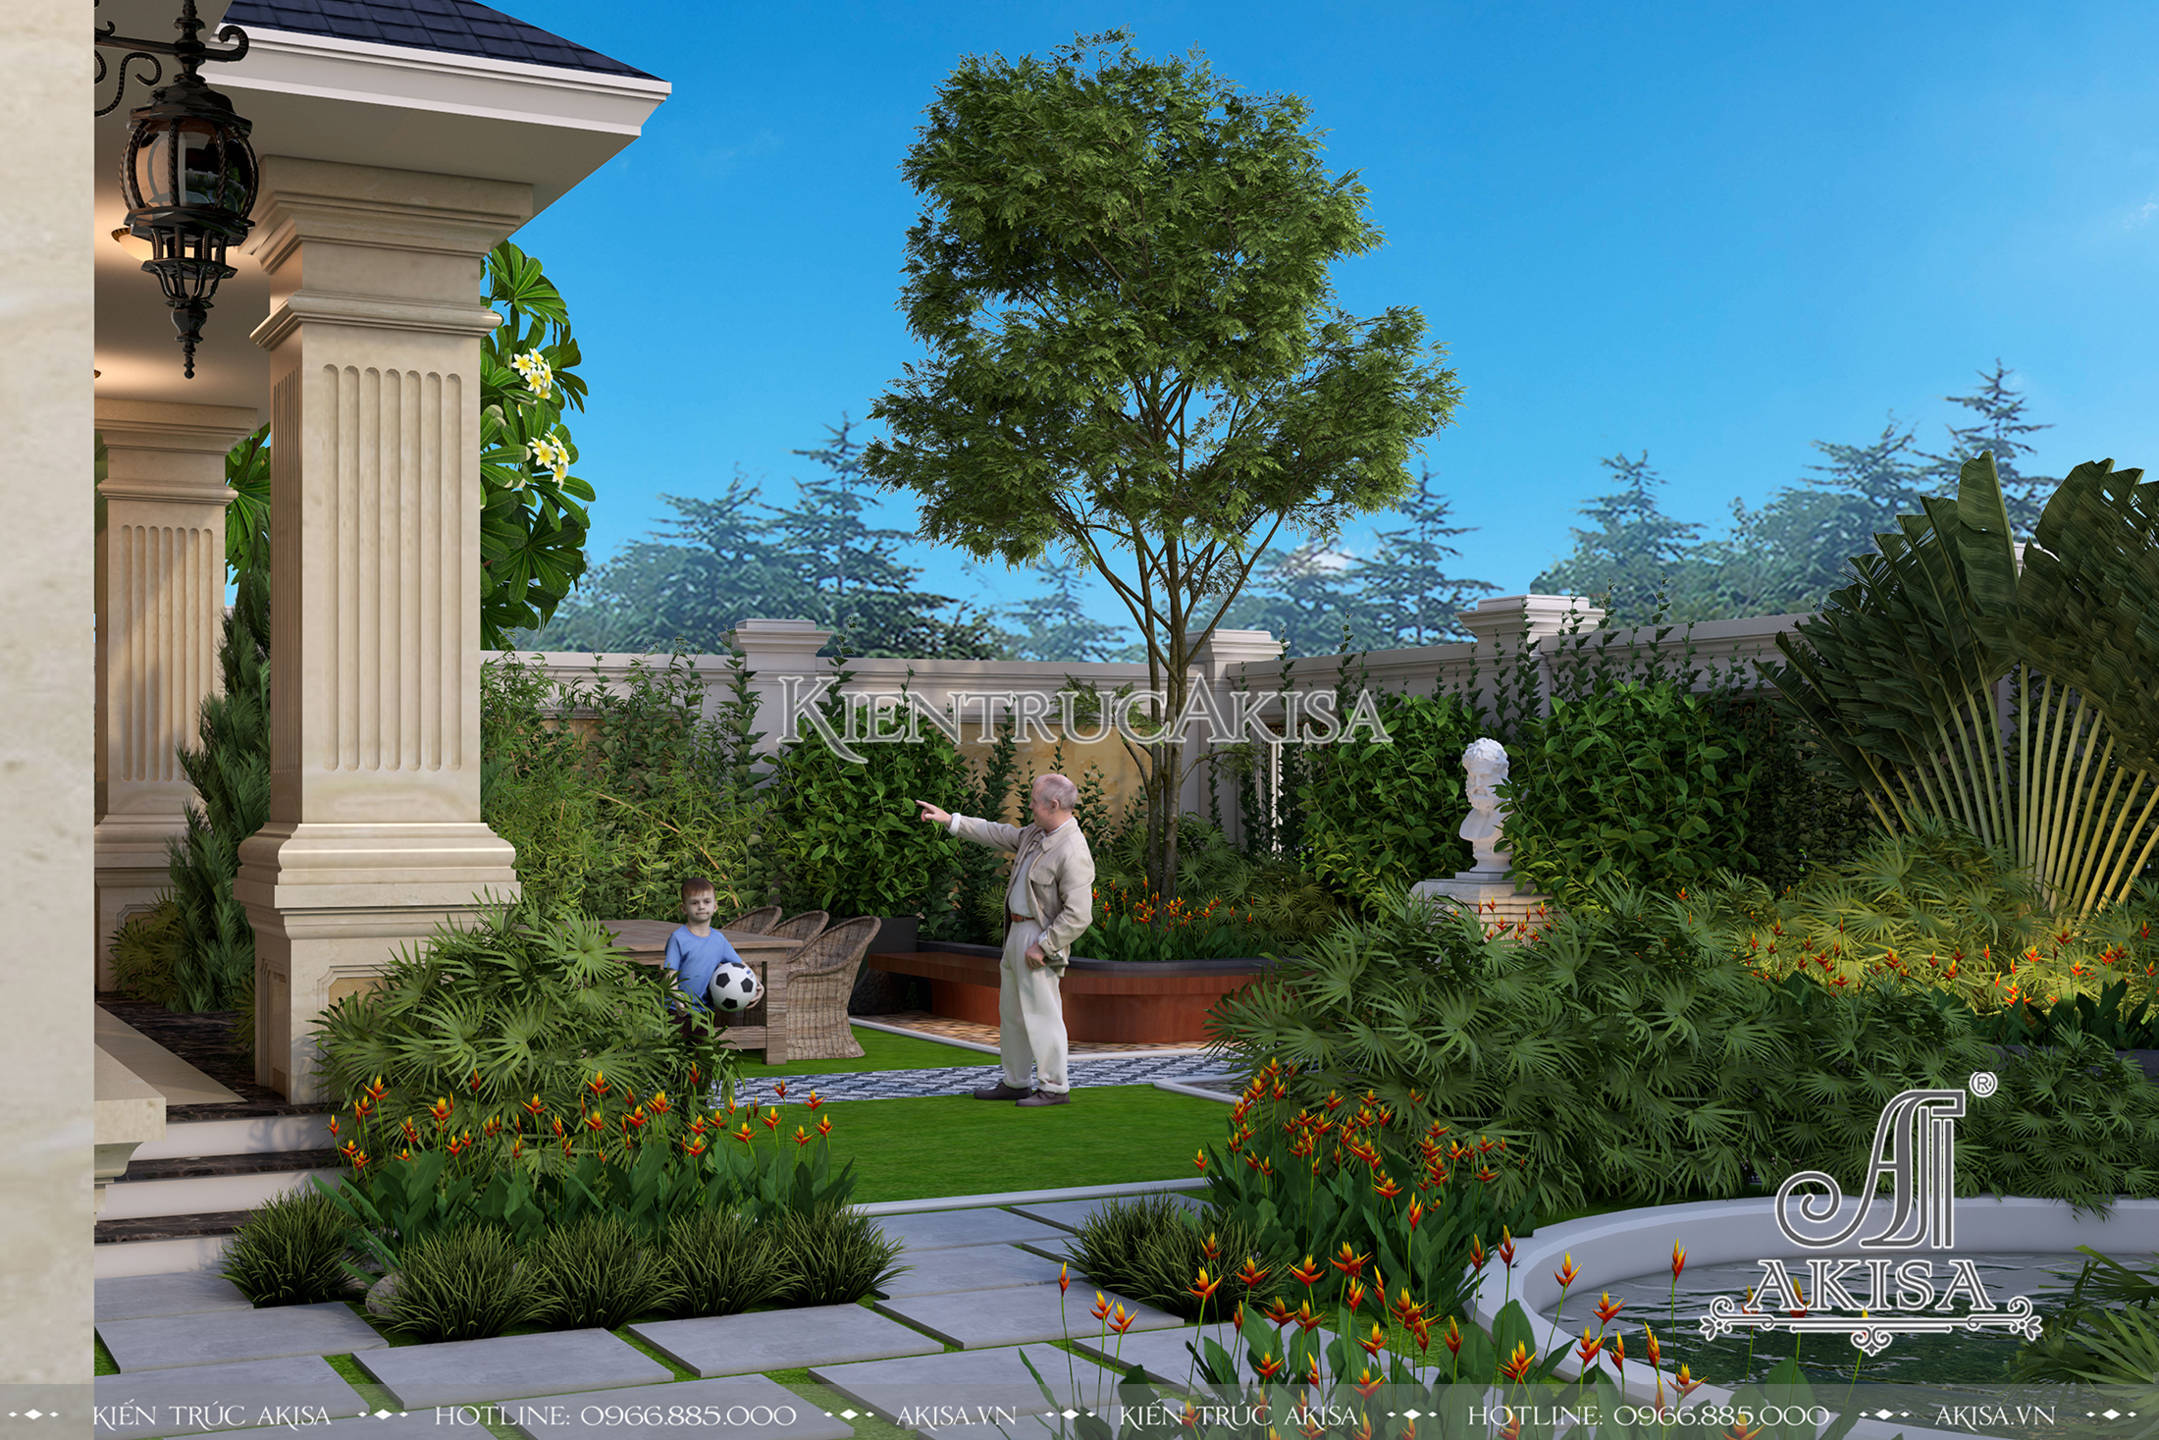 Thiết kế sân vườn biệt thự 180m2 đẹp hoàn mỹ với hồ nước - đường dạo - vườn hoa - thảm cỏ được bố trí một cách khoa học